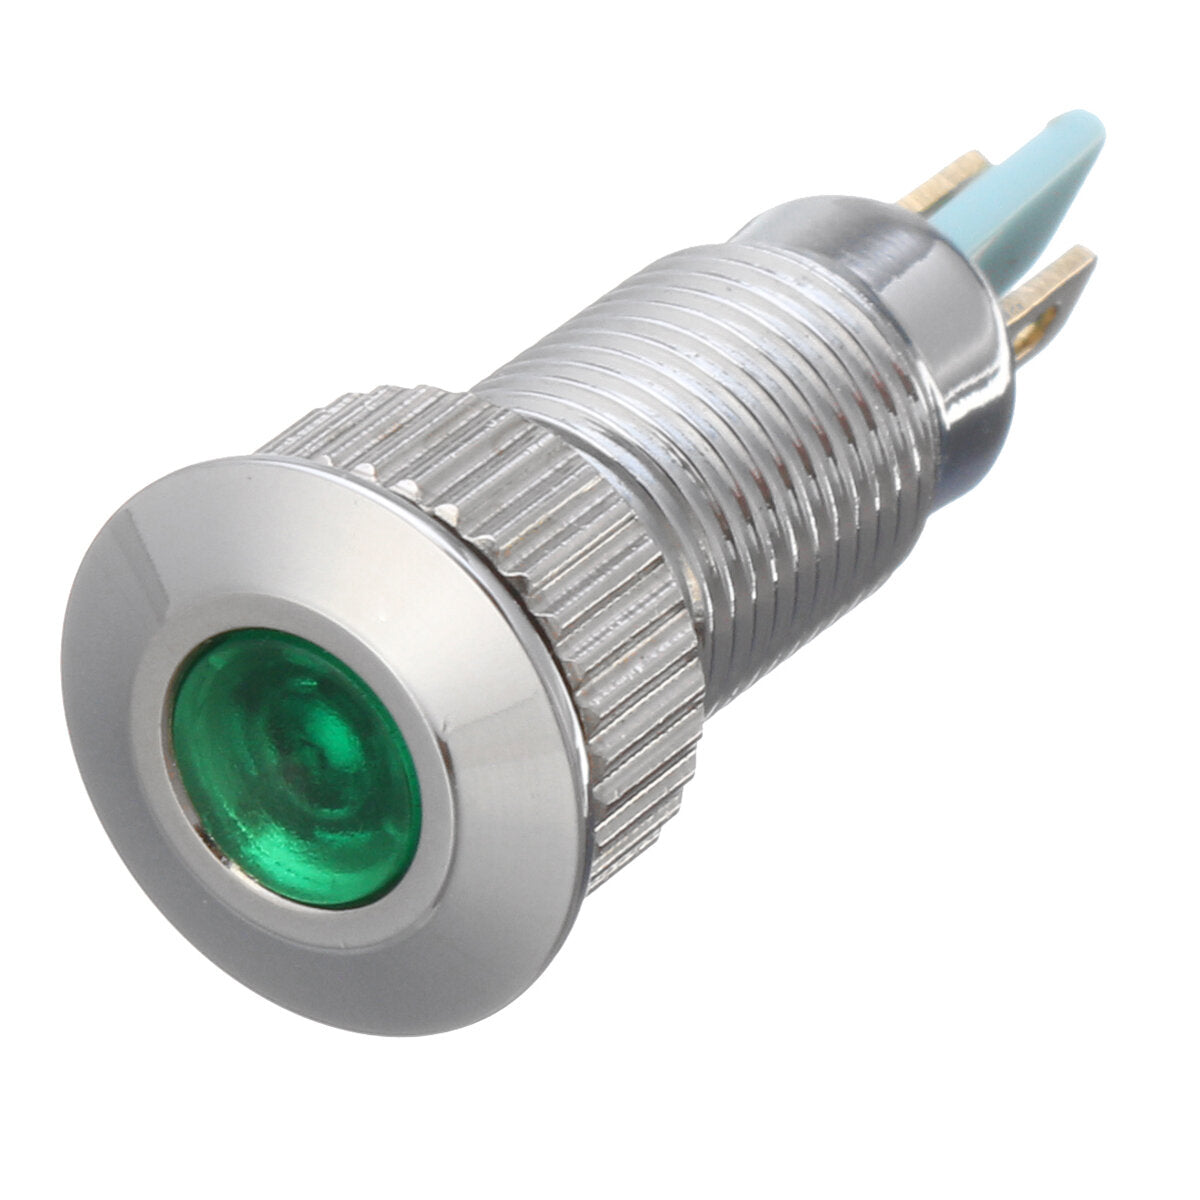 12v metaal 8mm led-lampje dash lamp waarschuwingslampje waterdicht